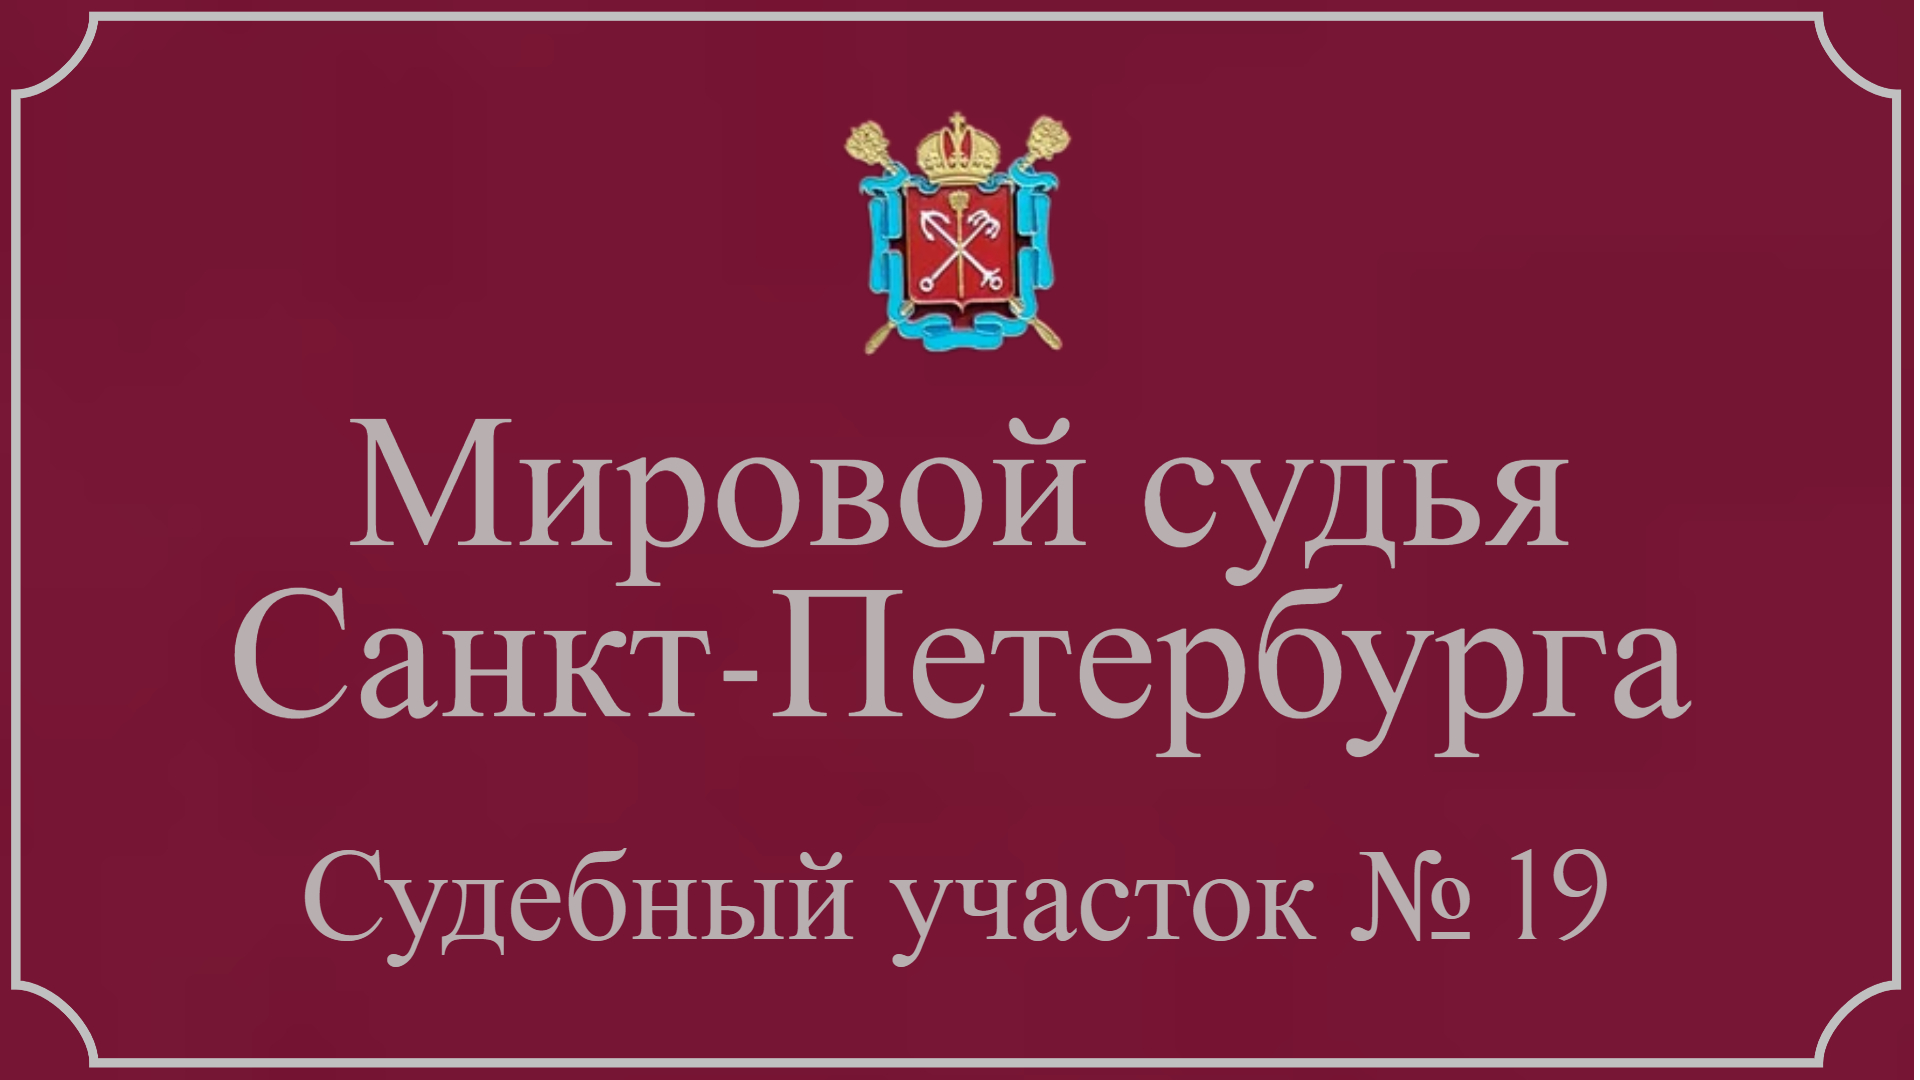 Информация по 19 судебному участку в Санкт-Петербурге.